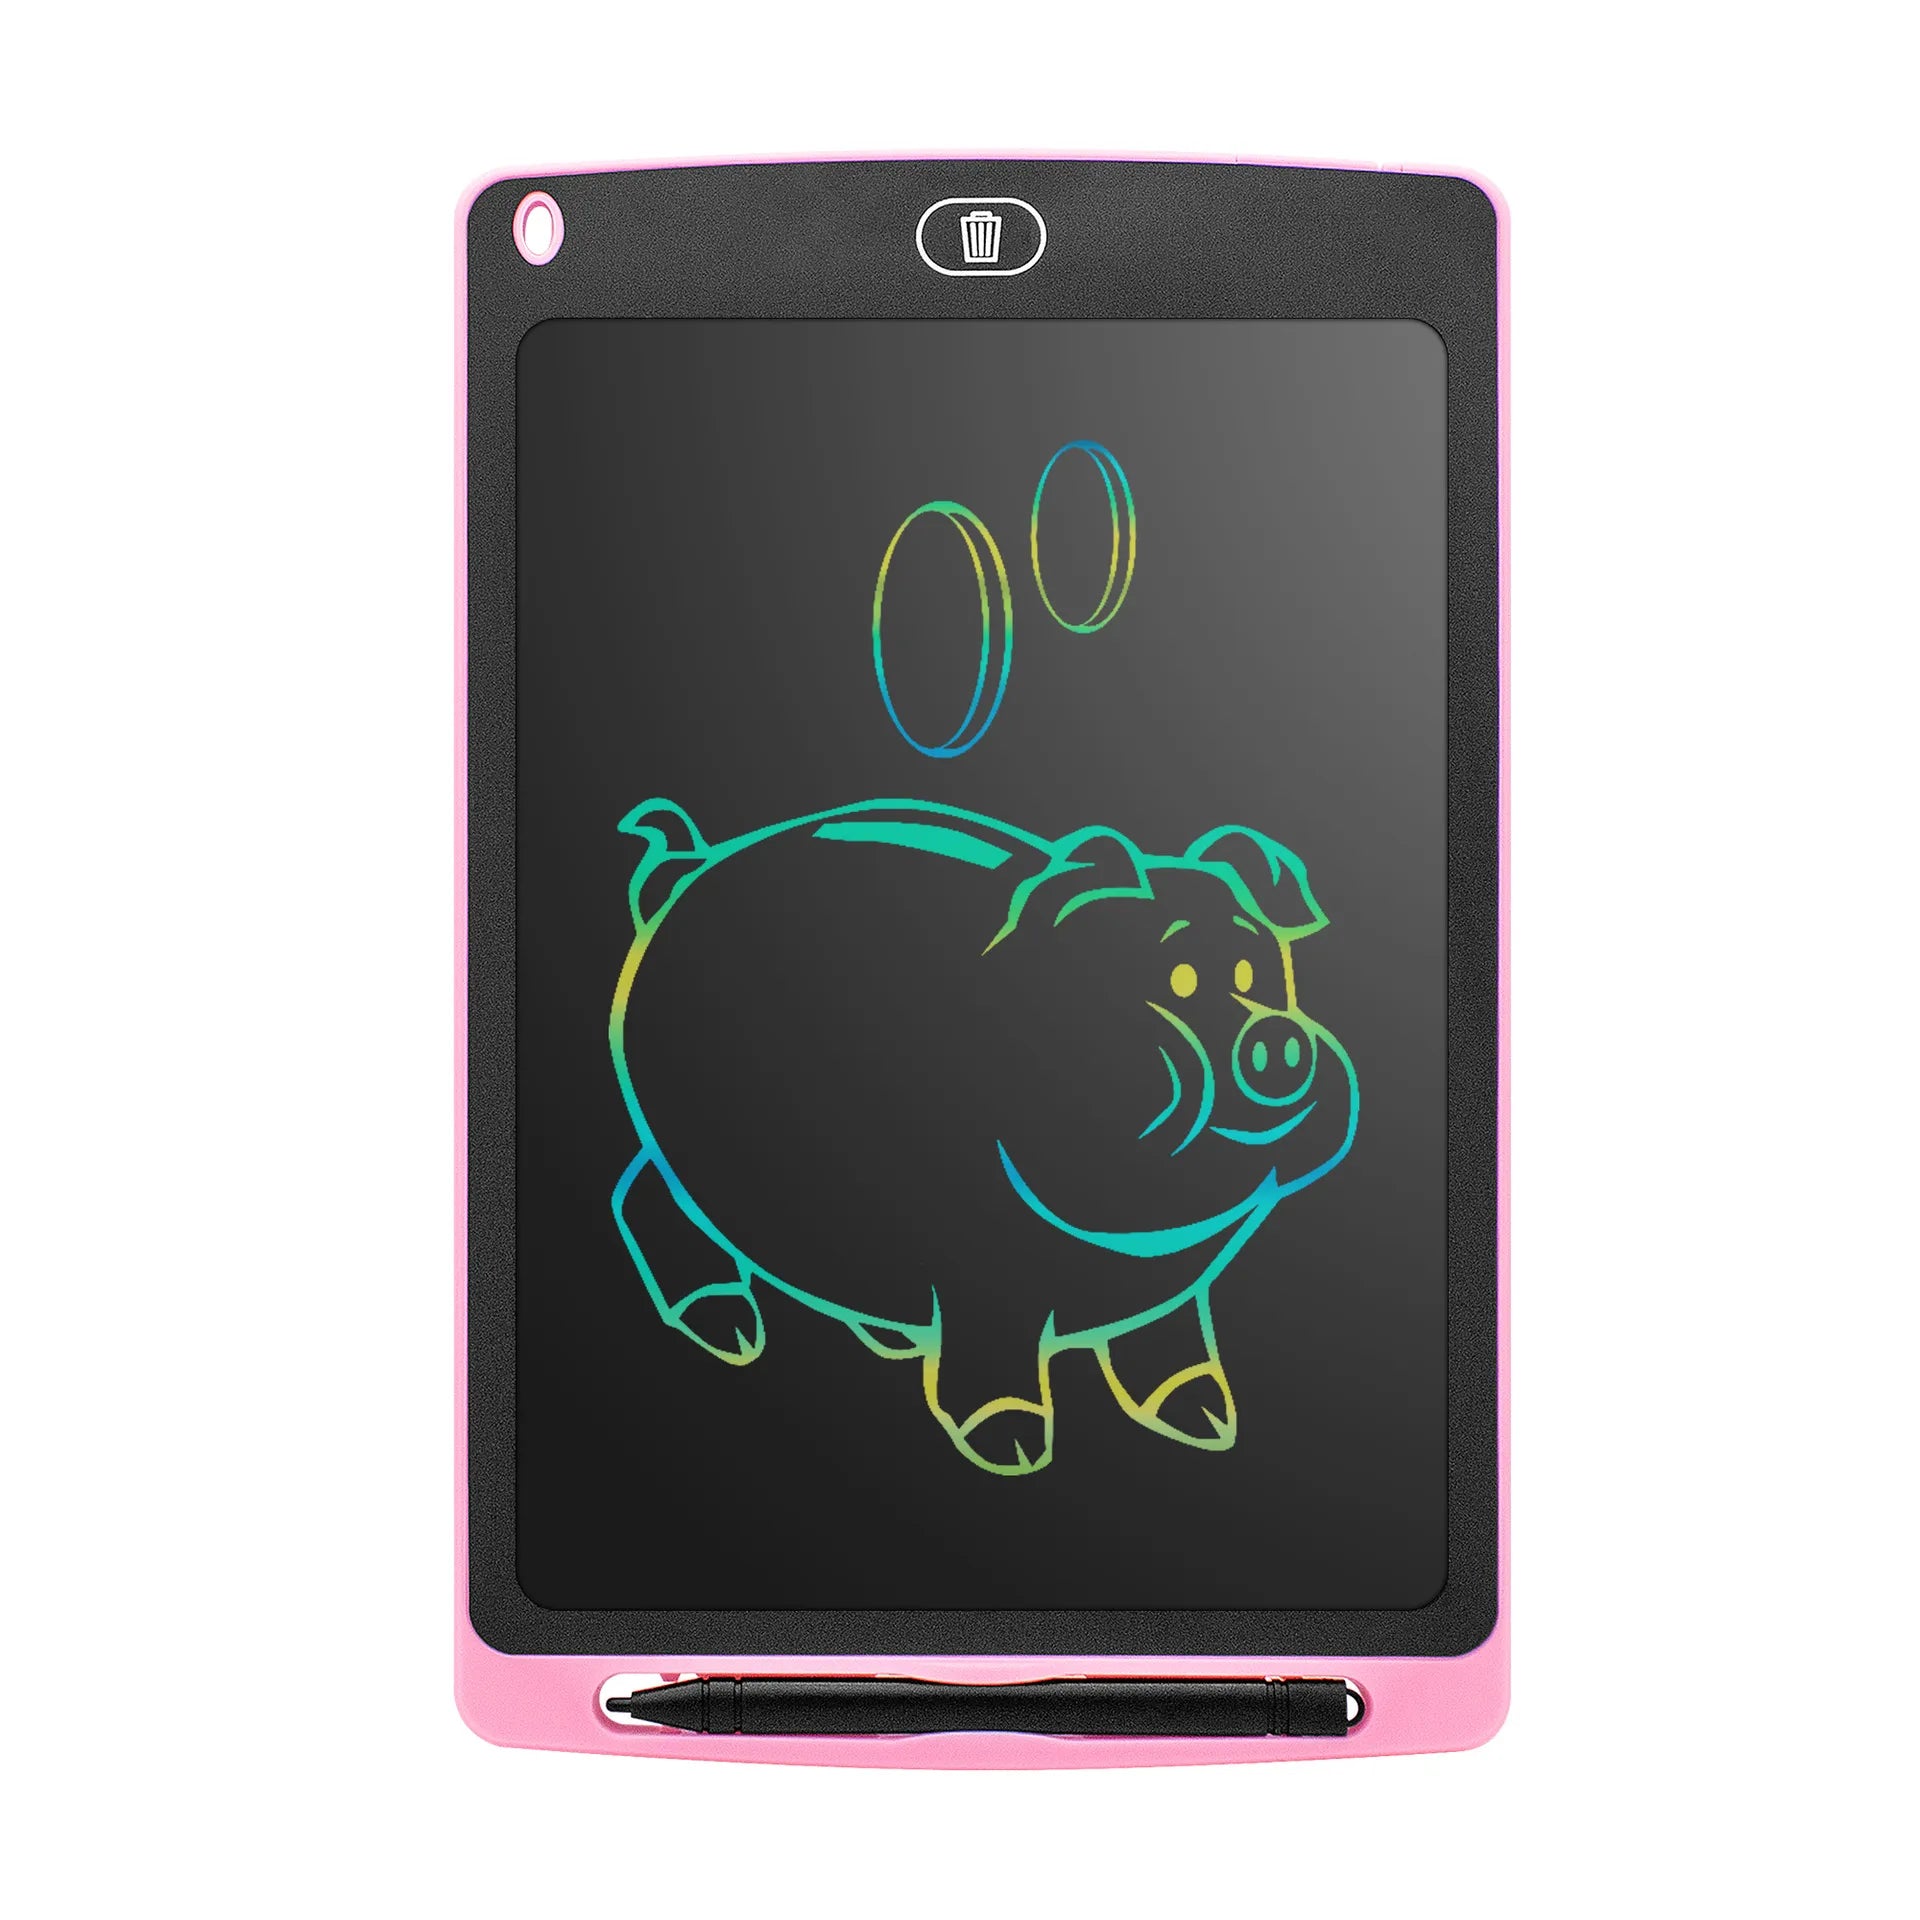 6.5/8.5/inch LCD Tekentablet voor Kinderen - Tekenbord - Educatief LCD Tablet - Speelgoed voor Kinderen - Tekenen & Knutselen - Digitaal Tekenen / Digitale Tekening - - DilaTrendshop